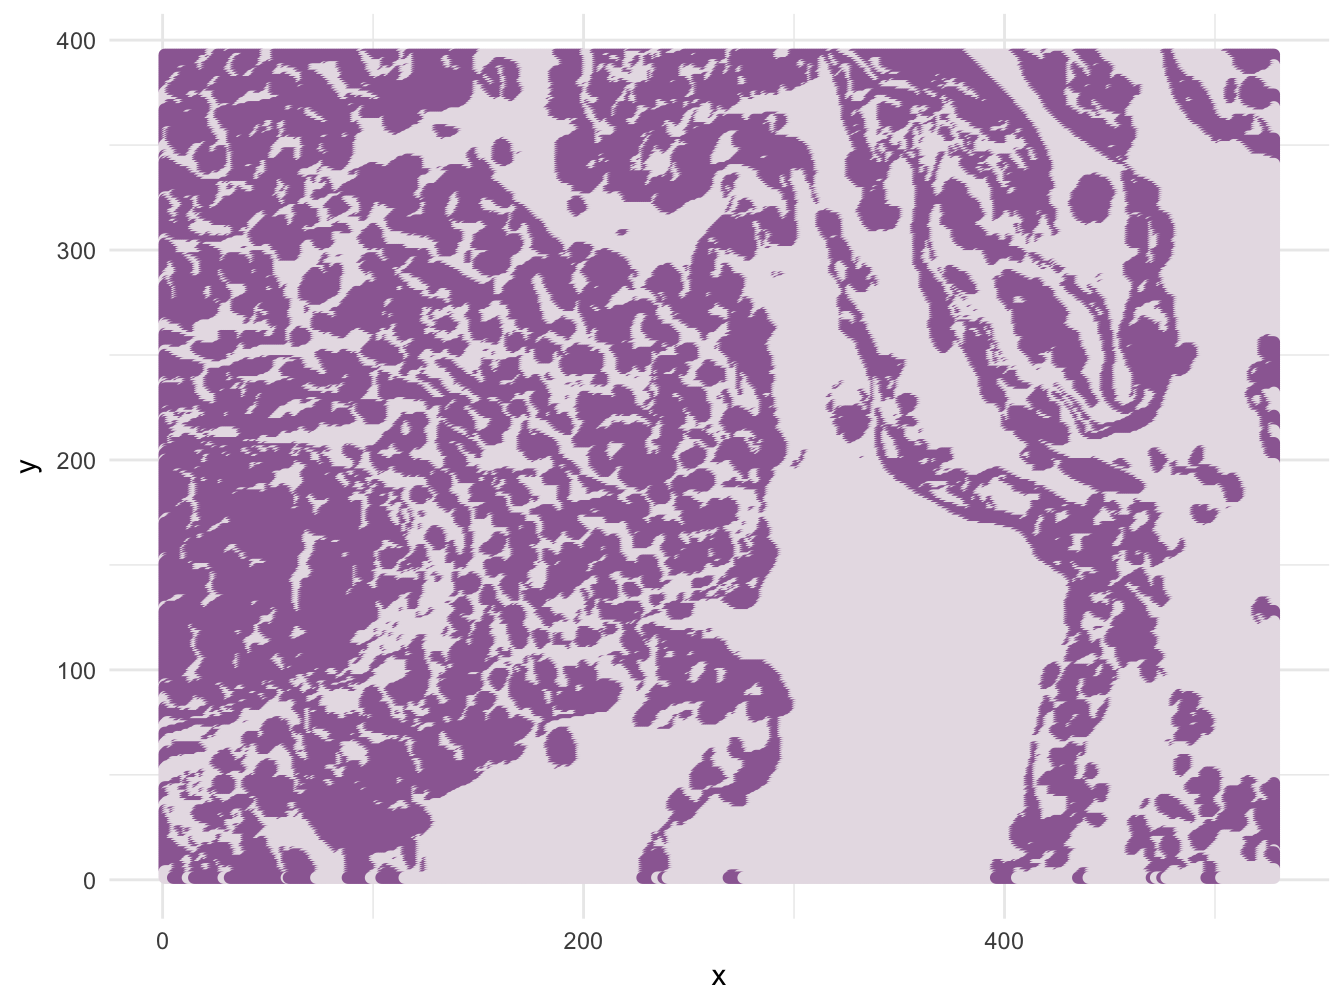 Result of k-means clustering of pixels based on colour for k=2.